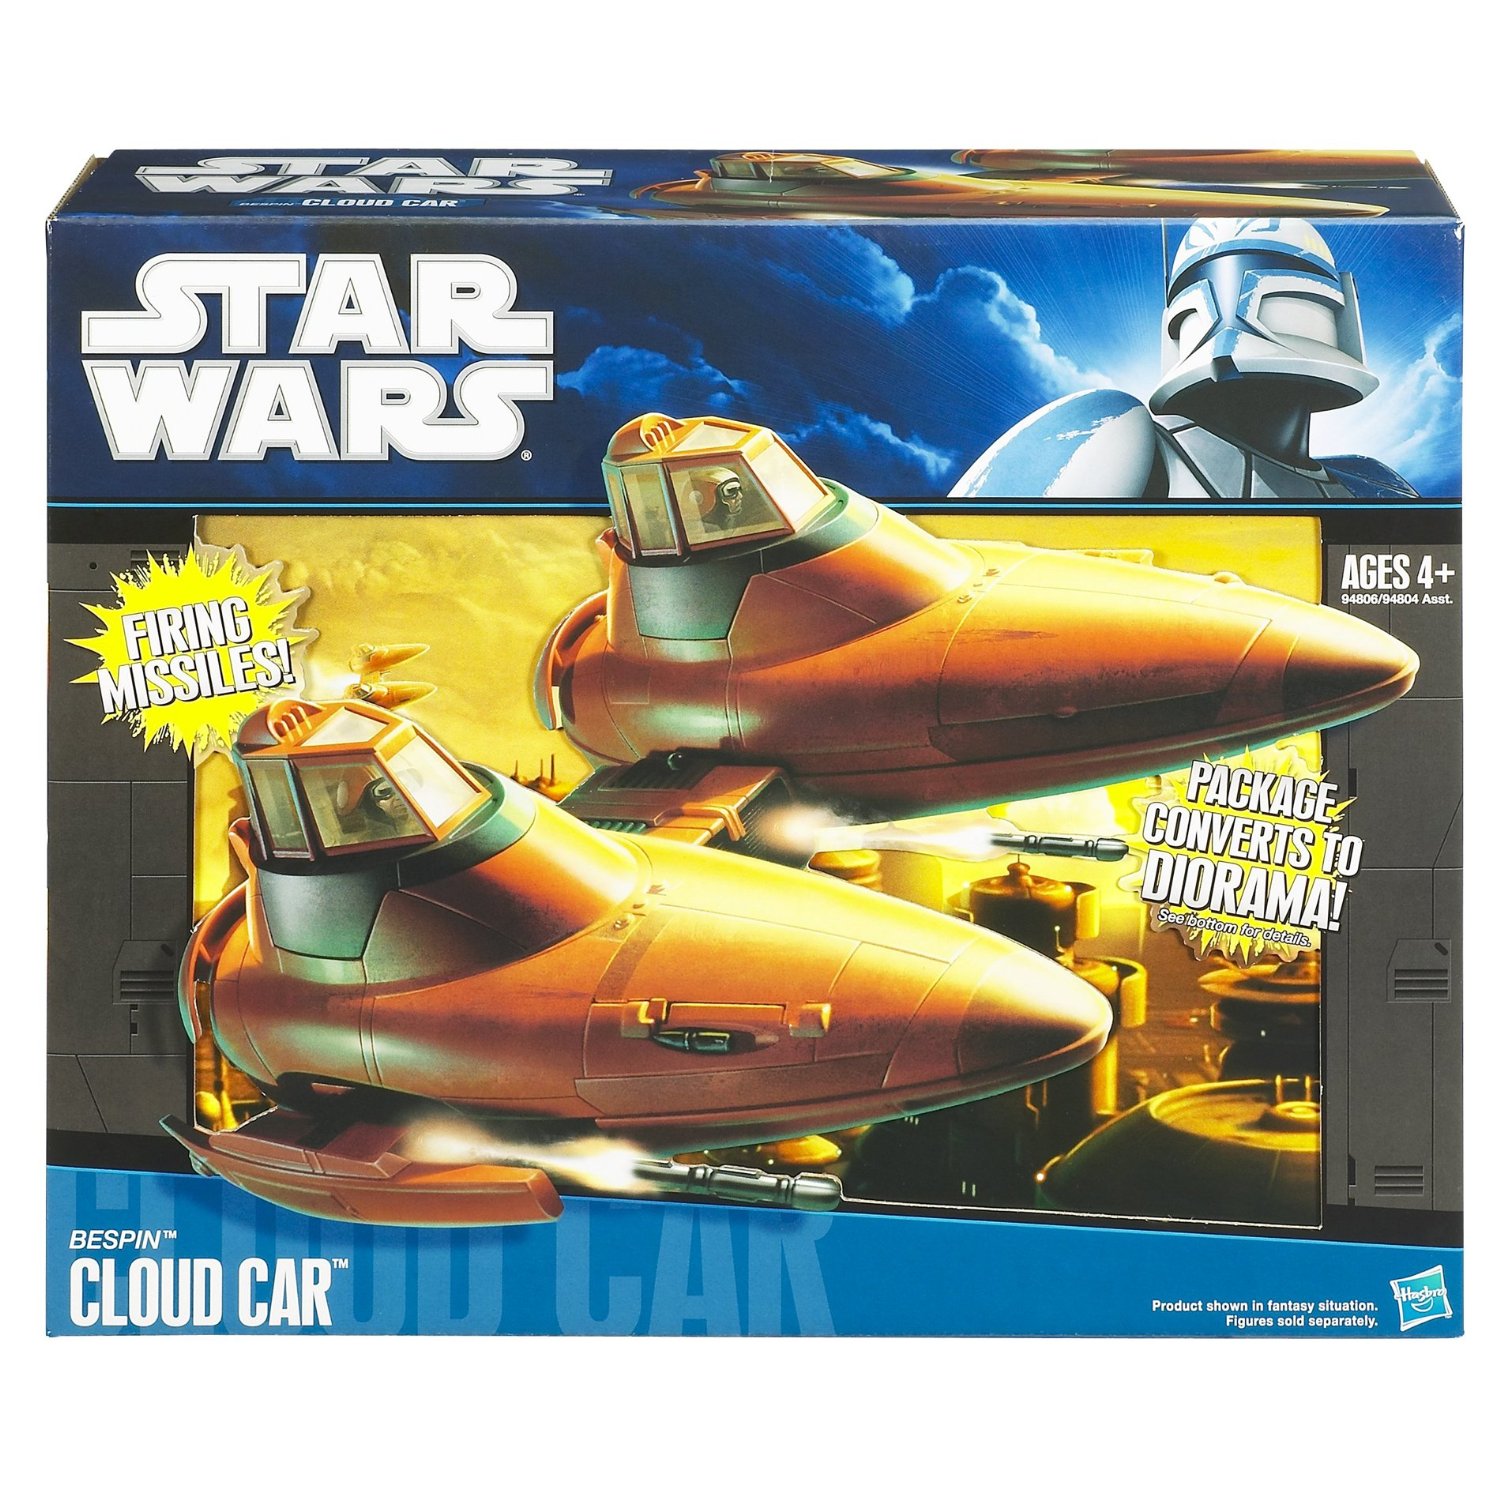 star wars cloud car toy